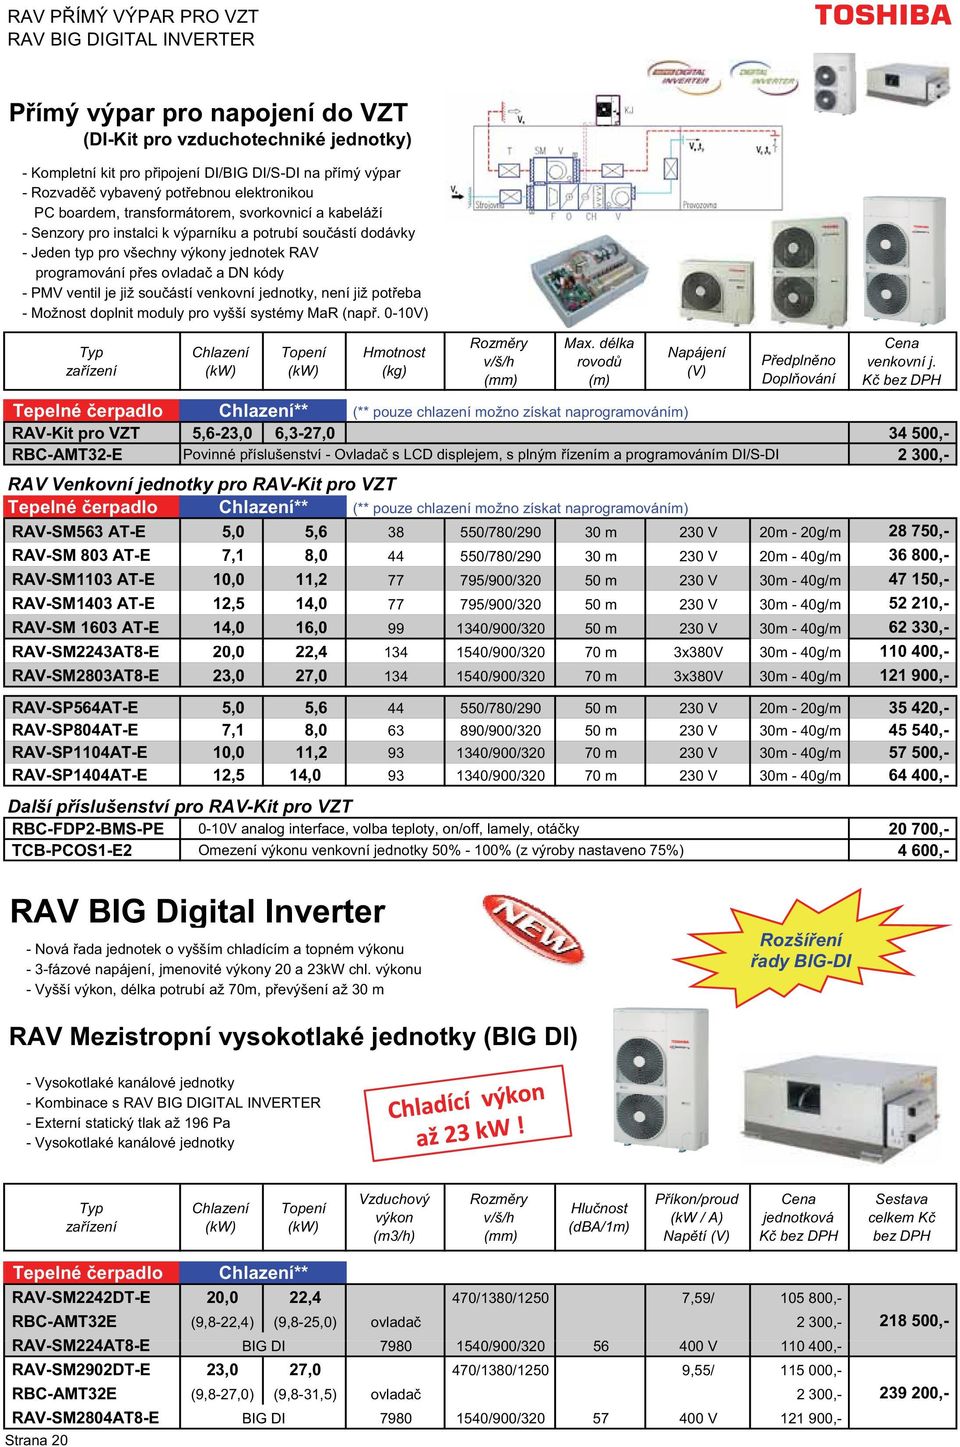 ovlada a DN kódy - PMV ventil je již sou ástí venkovní jednotky, není již pot eba - Možnost doplnit moduly pro vyšší systémy MaR (nap. 0-10V) Hmotnost (kg) Max.